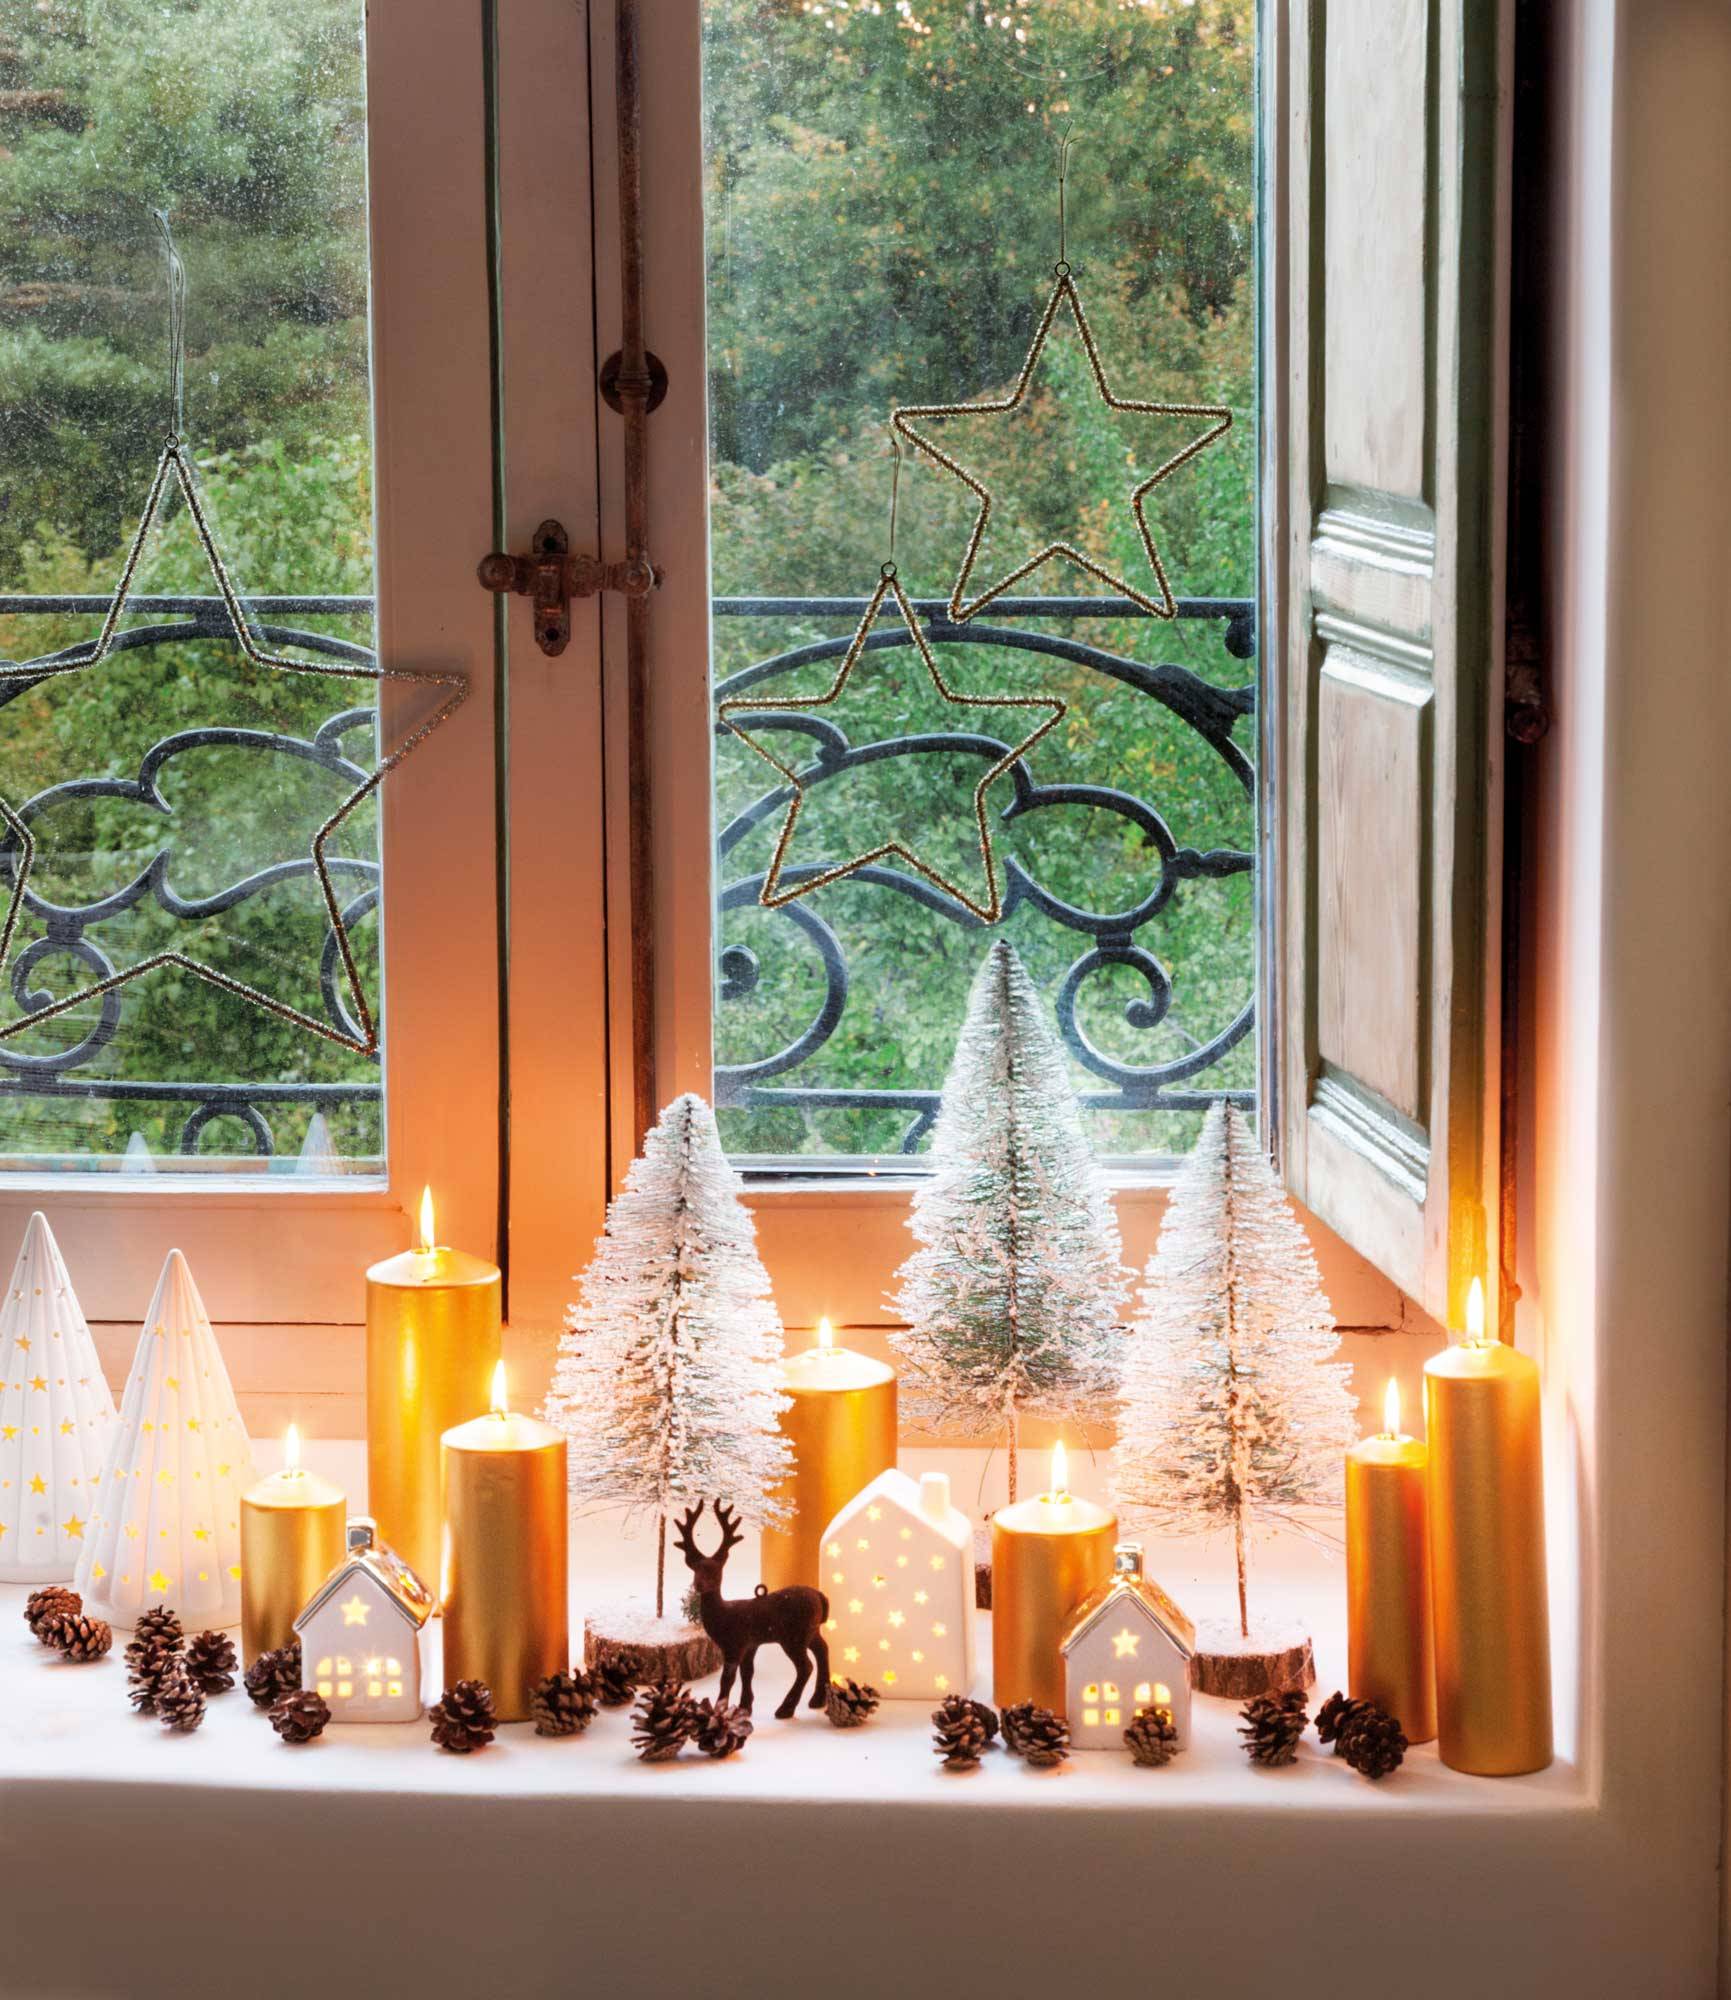 Navidad Decoracion Interior Exterior Luces Vela de Navidad de 1 pcs con luz LED de té Decorativas para Navidad Jardín Entrada Fiestas Boda Decoración 